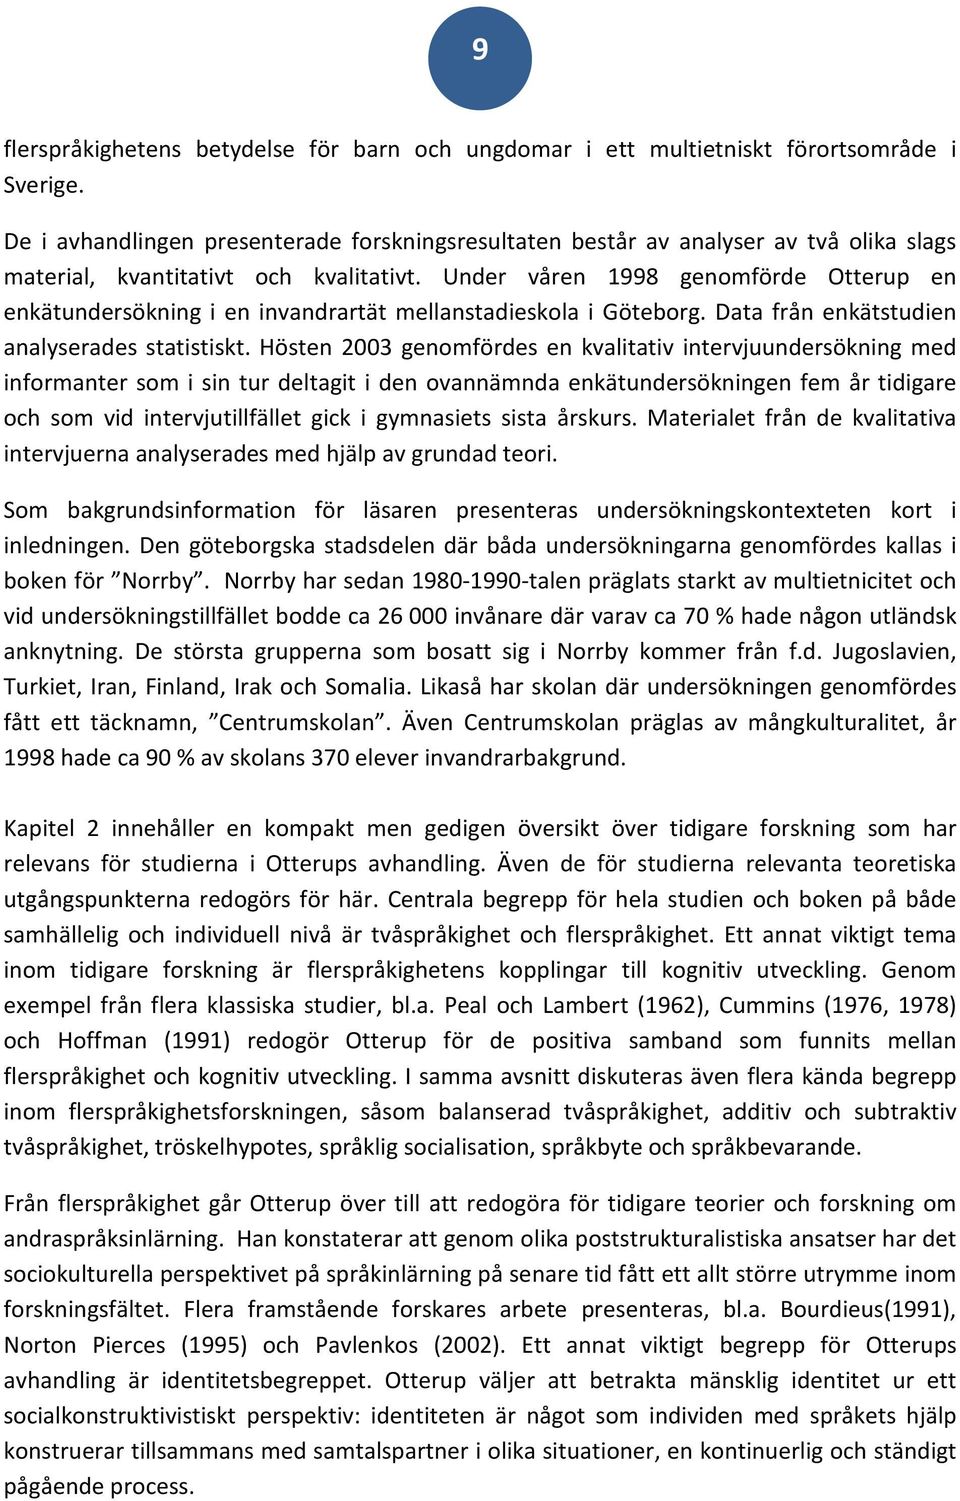 Under våren 1998 genomförde Otterup en enkätundersökning i en invandrartät mellanstadieskola i Göteborg. Data från enkätstudien analyserades statistiskt.